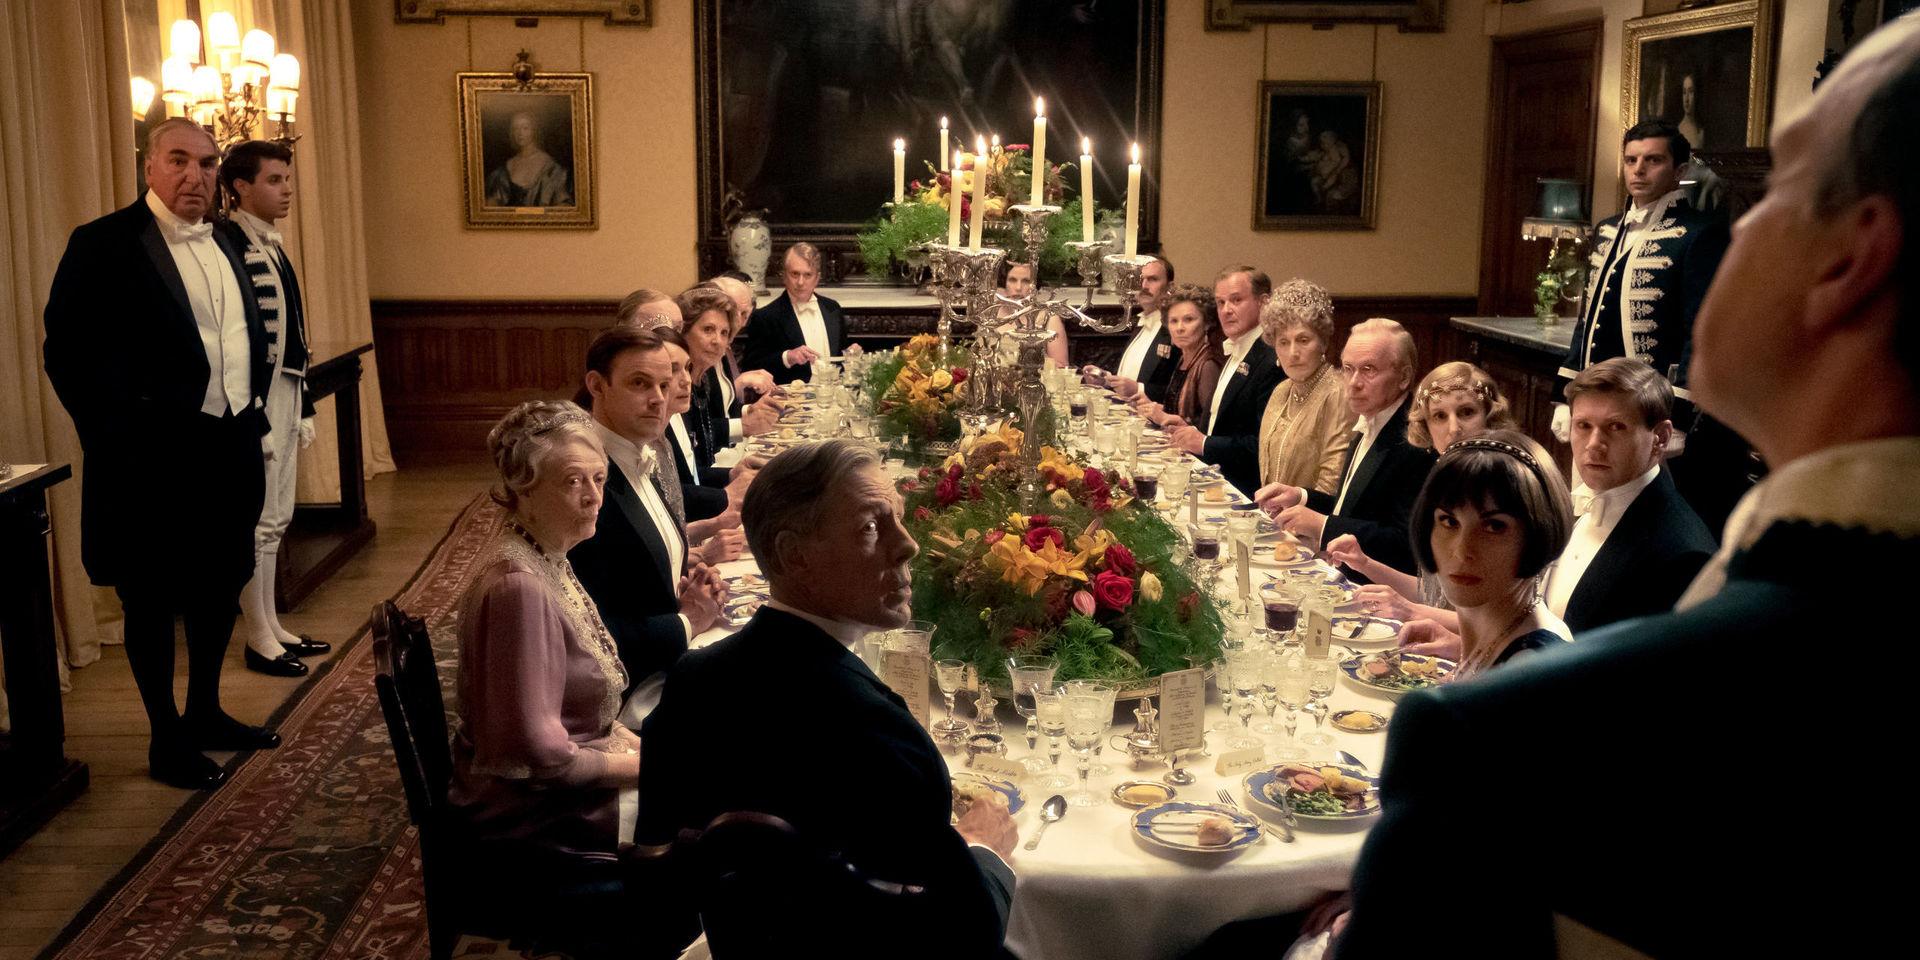 Kungen och drottningen kommer på besök till Downton Abbey. Frågan är vilka som är mest uppspelta, herrskapet eller tjänstefolket? Pressbild. 